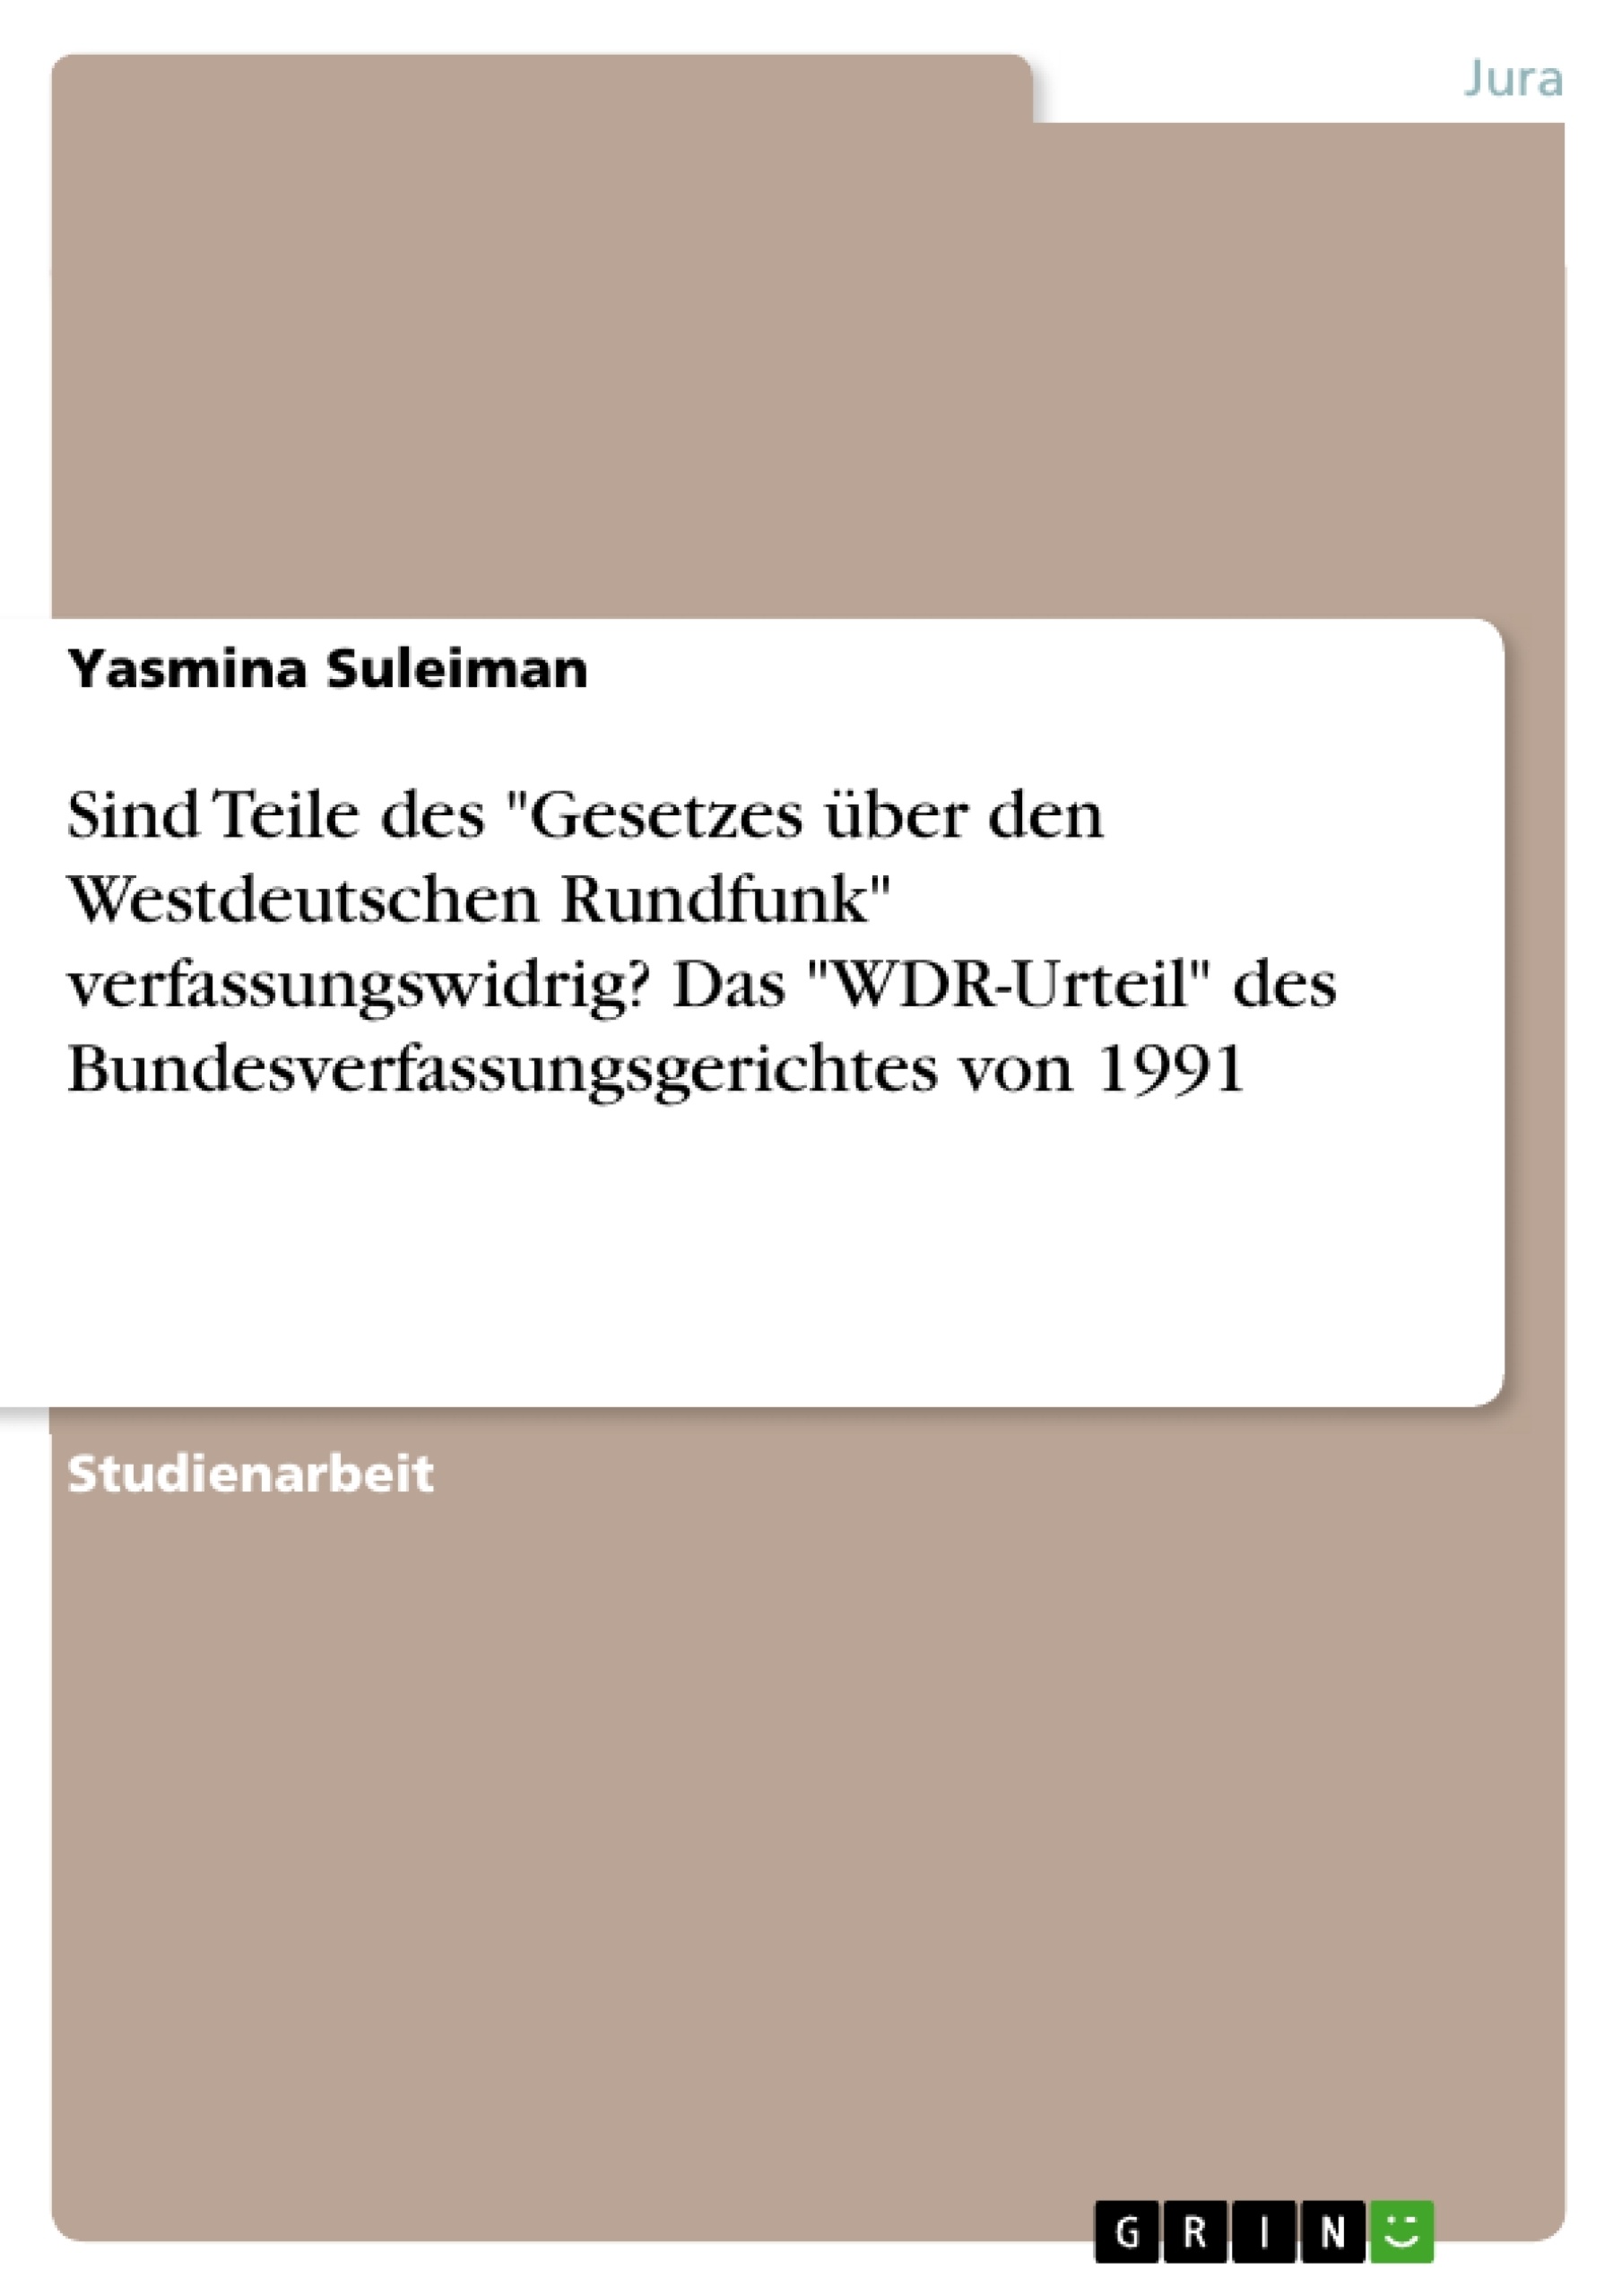 Titre: Sind Teile des  "Gesetzes über den Westdeutschen Rundfunk" verfassungswidrig? Das "WDR-Urteil" des Bundesverfassungsgerichtes von 1991